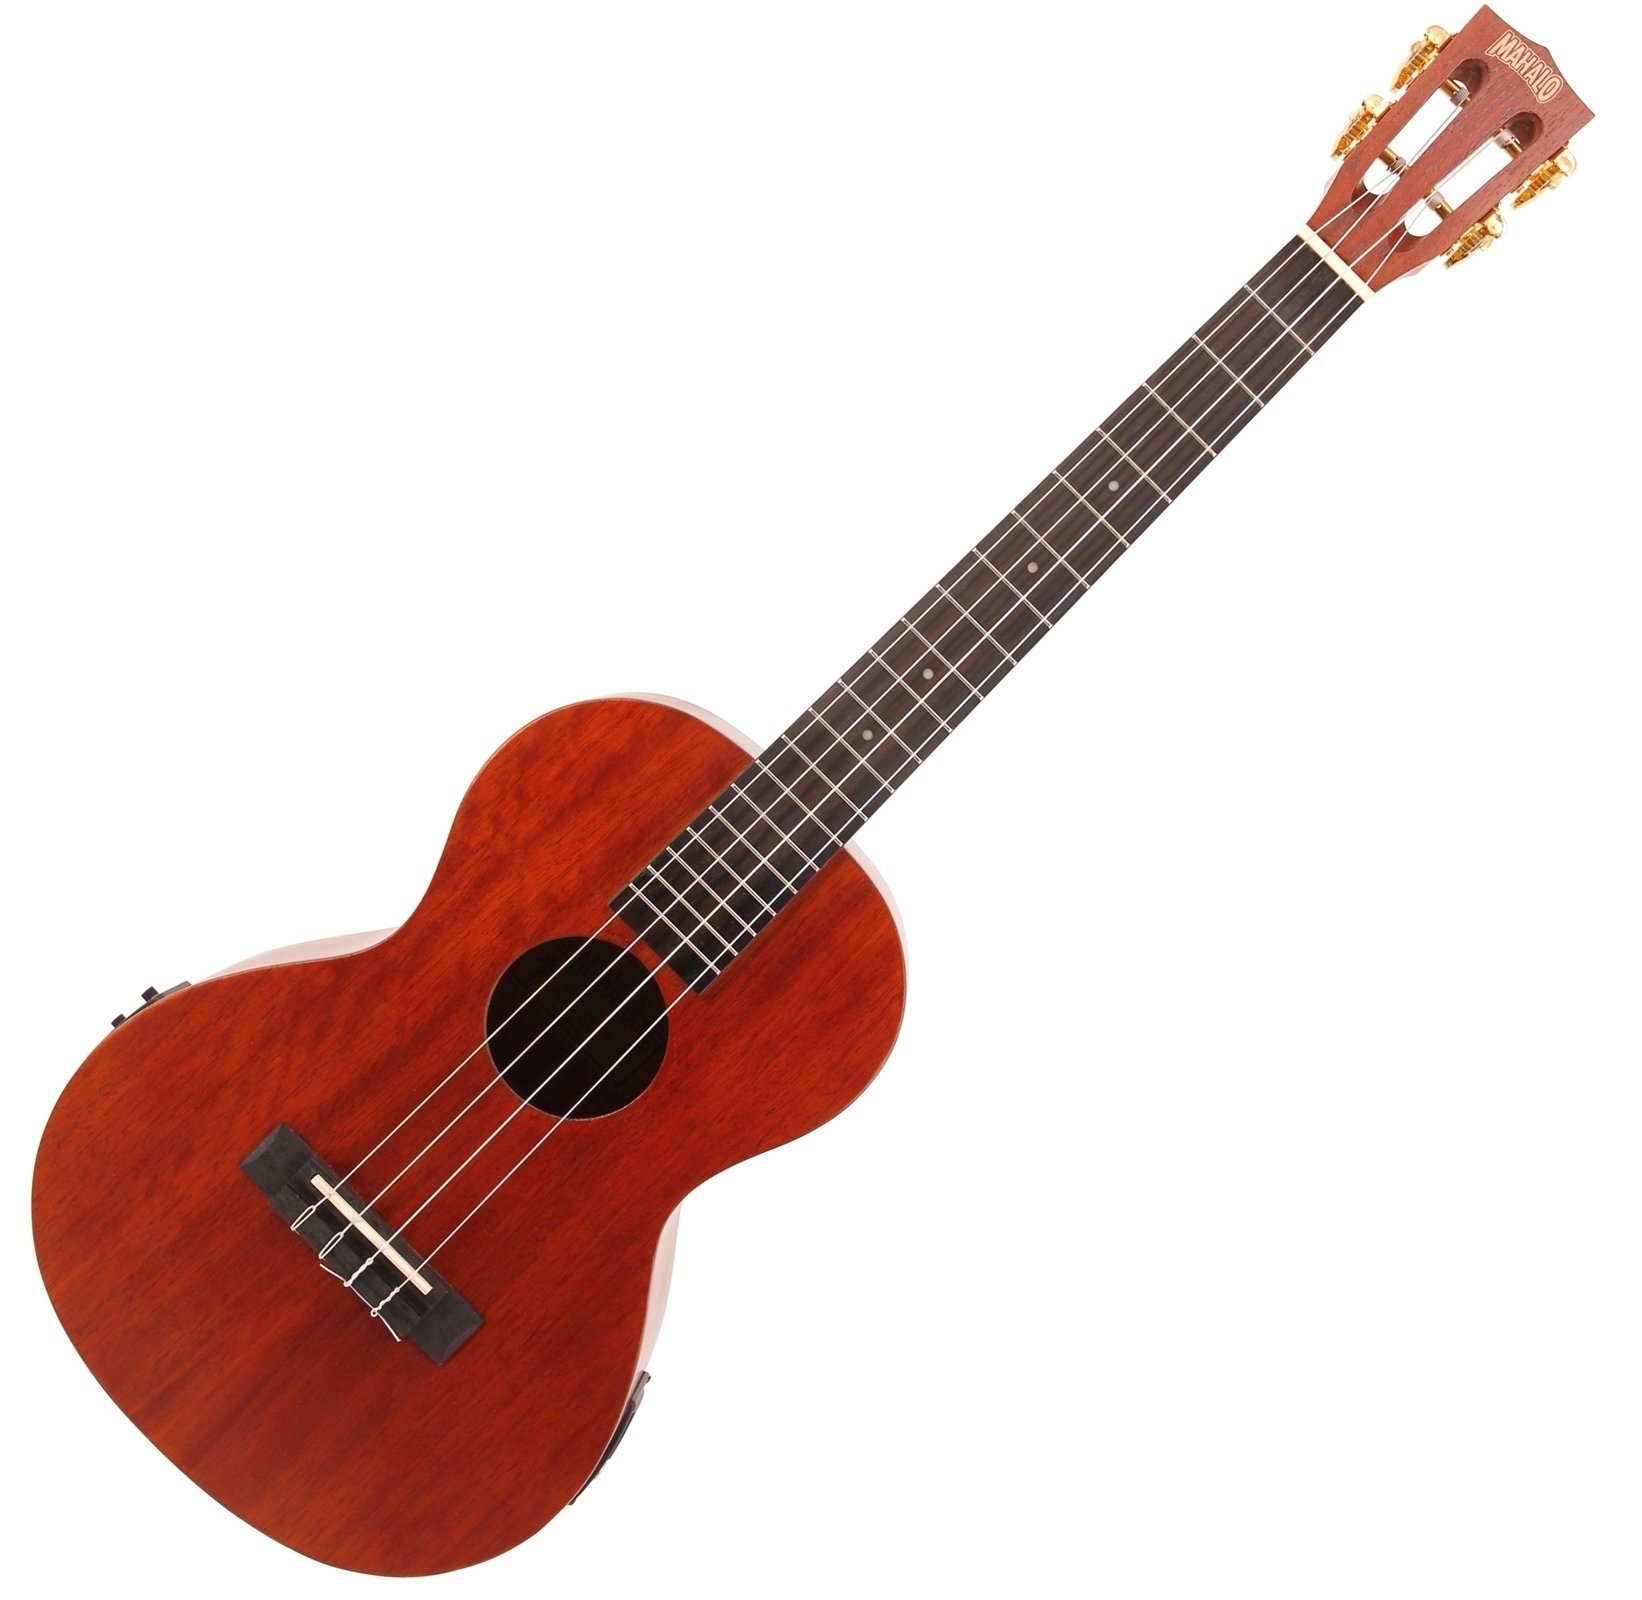 Bariton ukulele Mahalo MJ4-VT Bariton ukulele Trans Brown